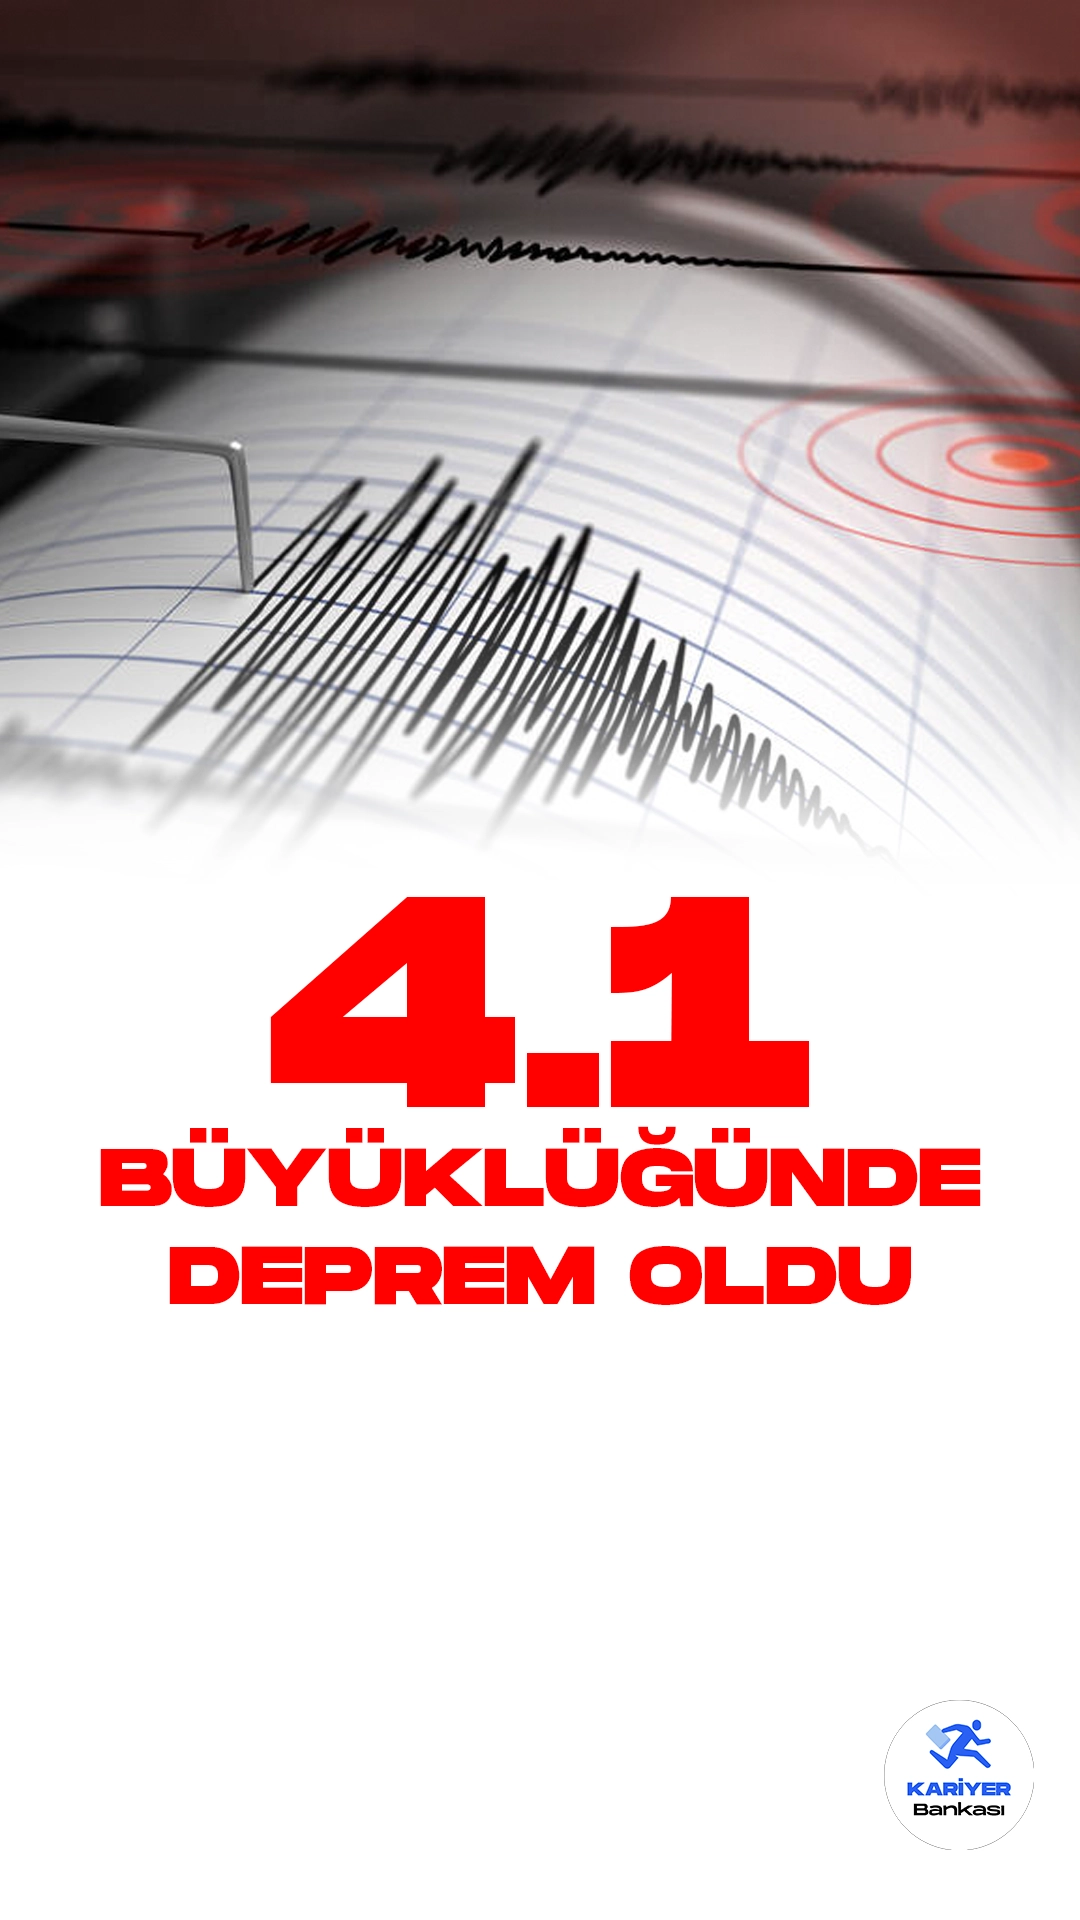 Son Dakika: Marmara Denizi Yalova Açıklarında 4.1 Büyüklüğünde Deprem Oldu. İçişleri Bakanlığı Afet ve Acil Durum Yönetimi Başkanlığı sayfası üzerinden yayımlanan son dakika duyurusunda, Marmara Denizi Yalova açıklarında 4.1 büyüklüğünde deprem meydana geldiği aktarıldı.